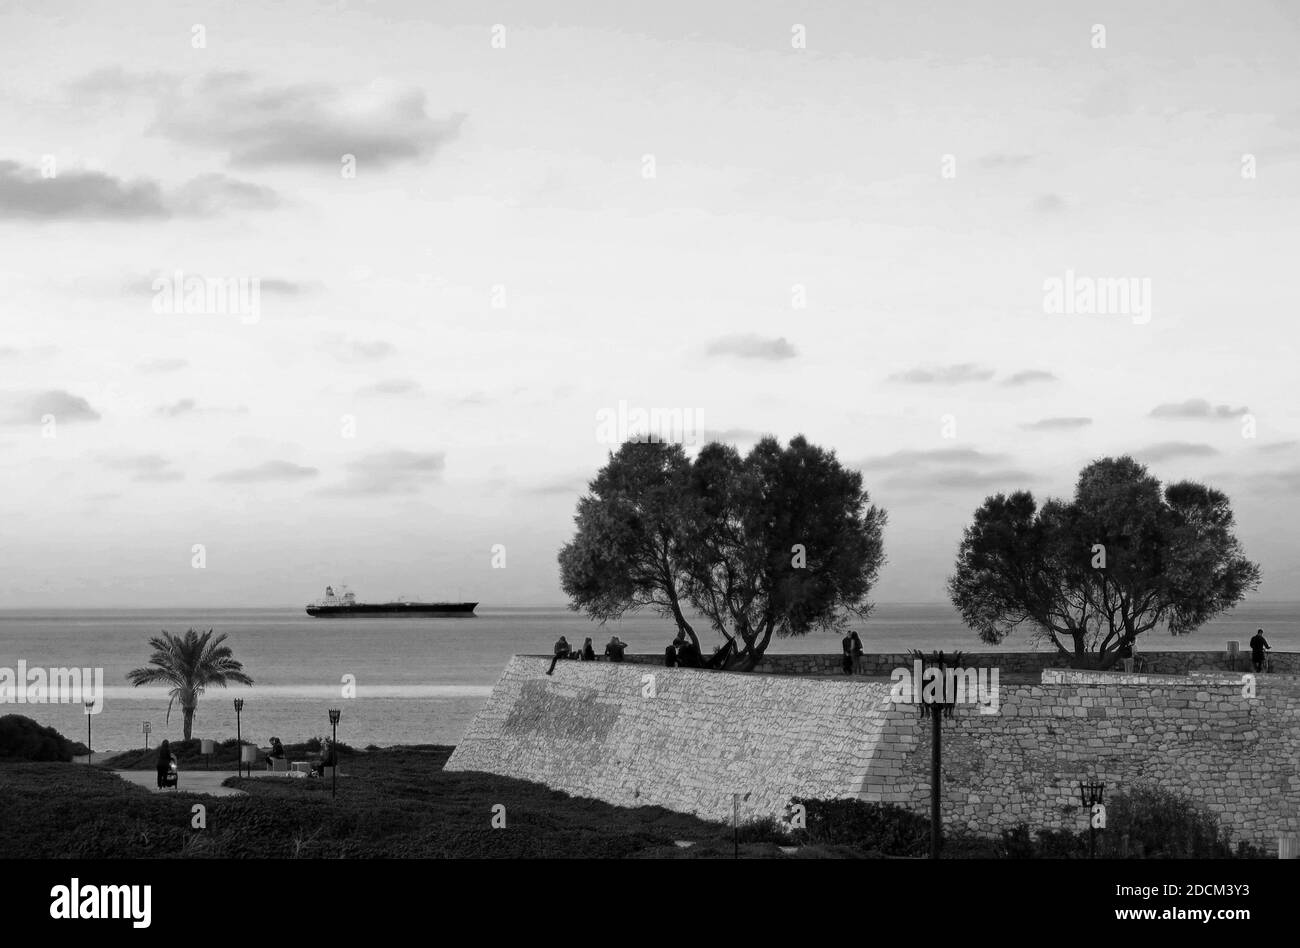 Vue partielle du bastion de Saint-André, qui fait partie des fortifications d'Héraklion, en Crète, pendant les heures de distancement social pour la pandémie Covid-19. Banque D'Images